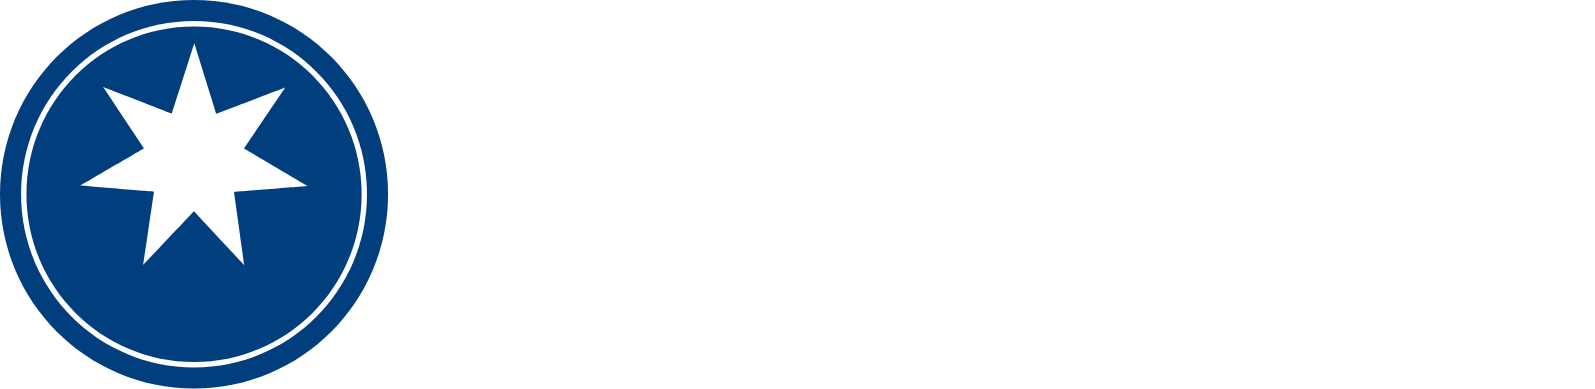 Magellan Financial Group logo grand pour les fonds sombres (PNG transparent)